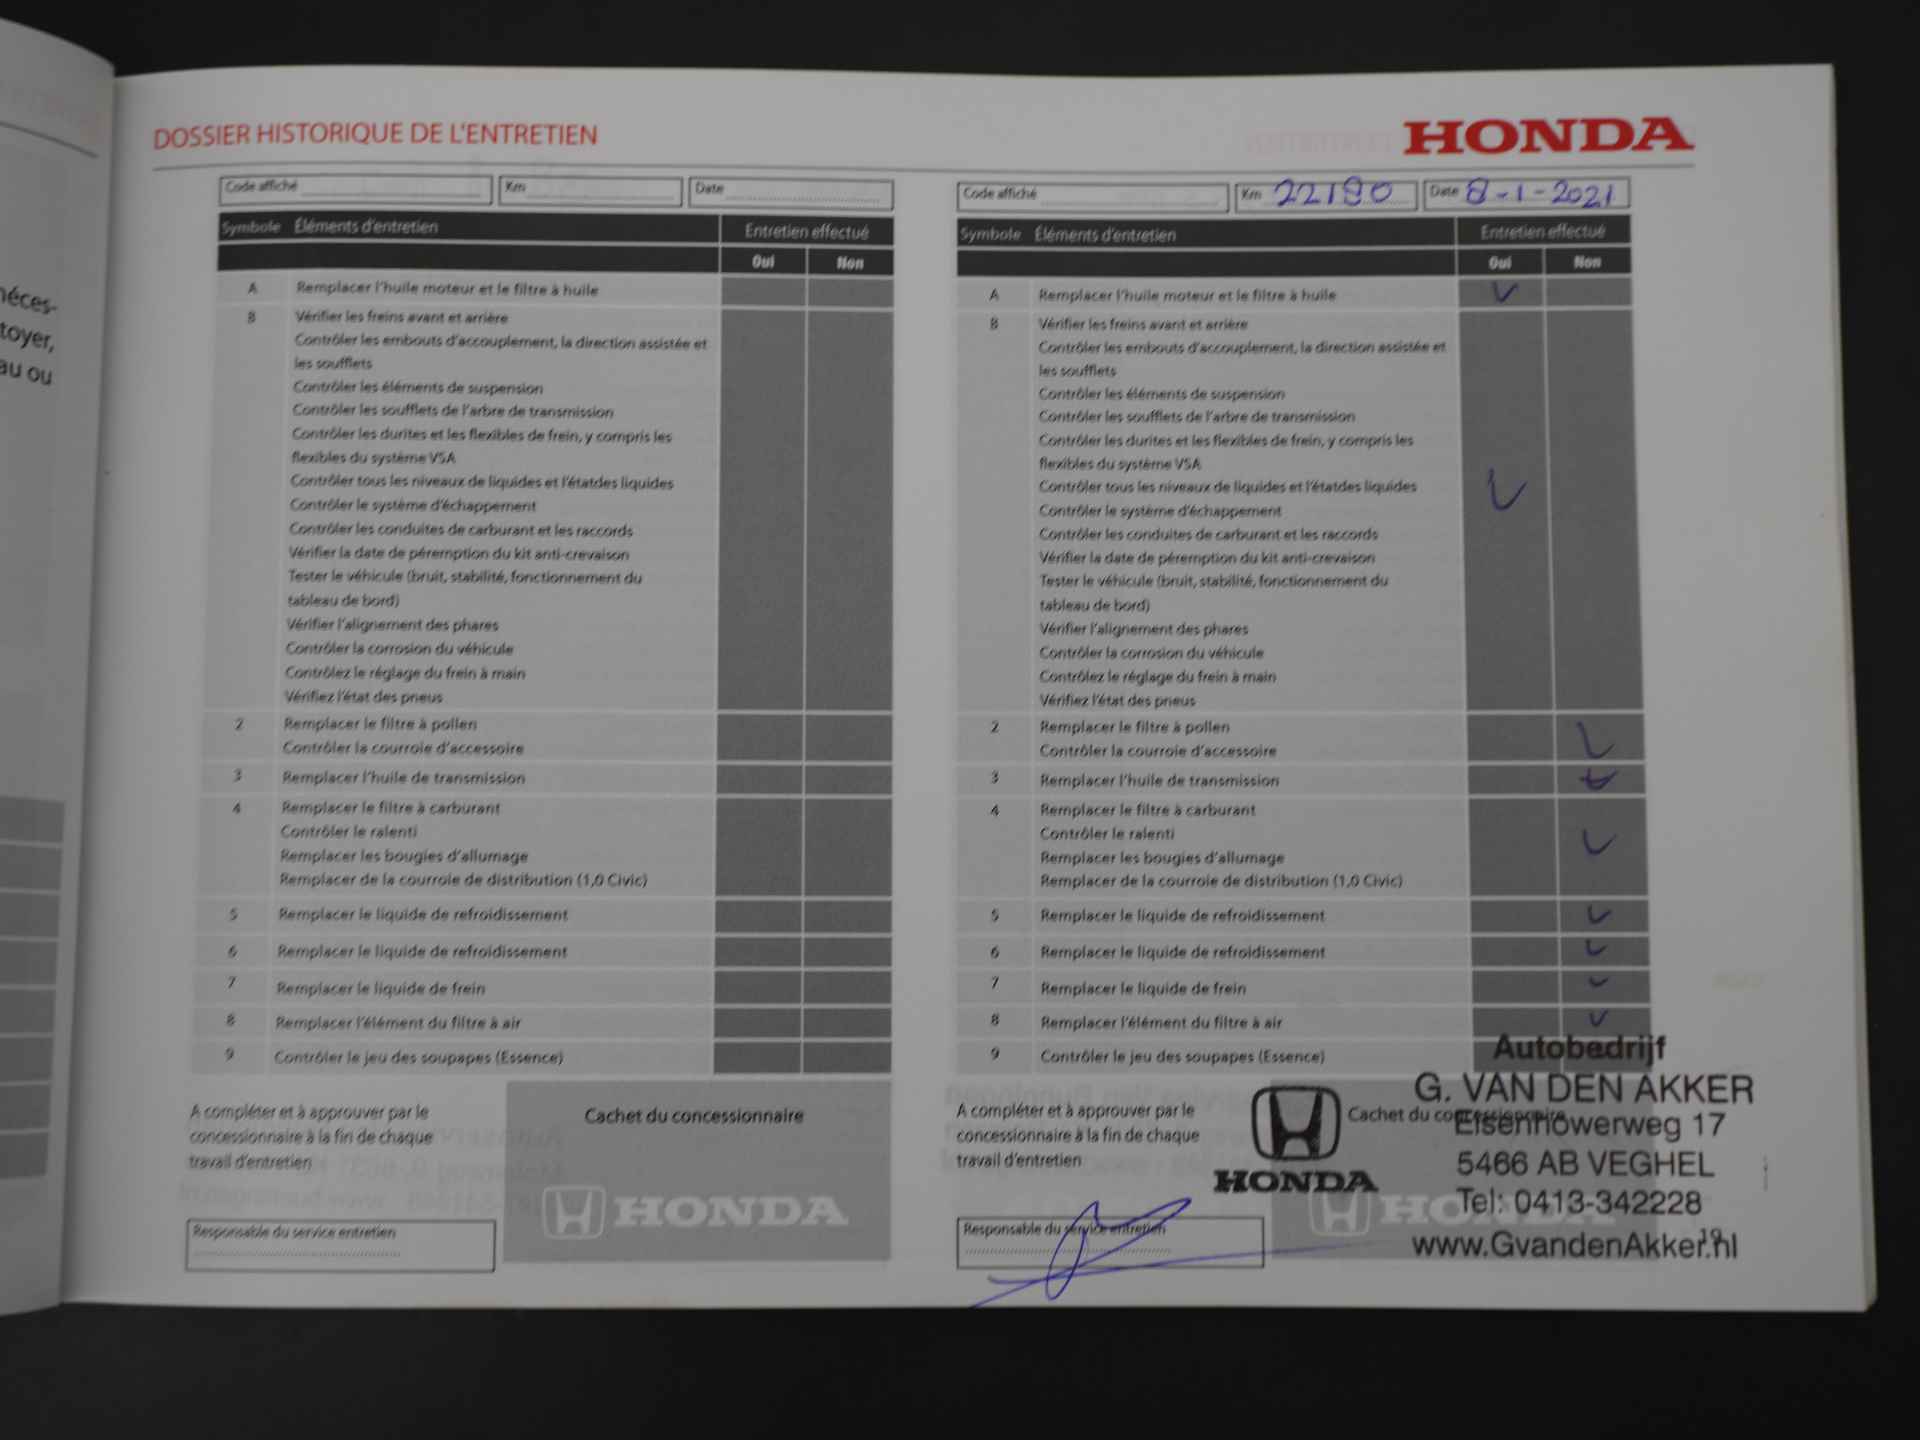 Honda HR-V 1.5 i-VTEC 182pk Automaat Sport,afn. trekh. rijklaar incl. 24 mnd garantie - 43/47